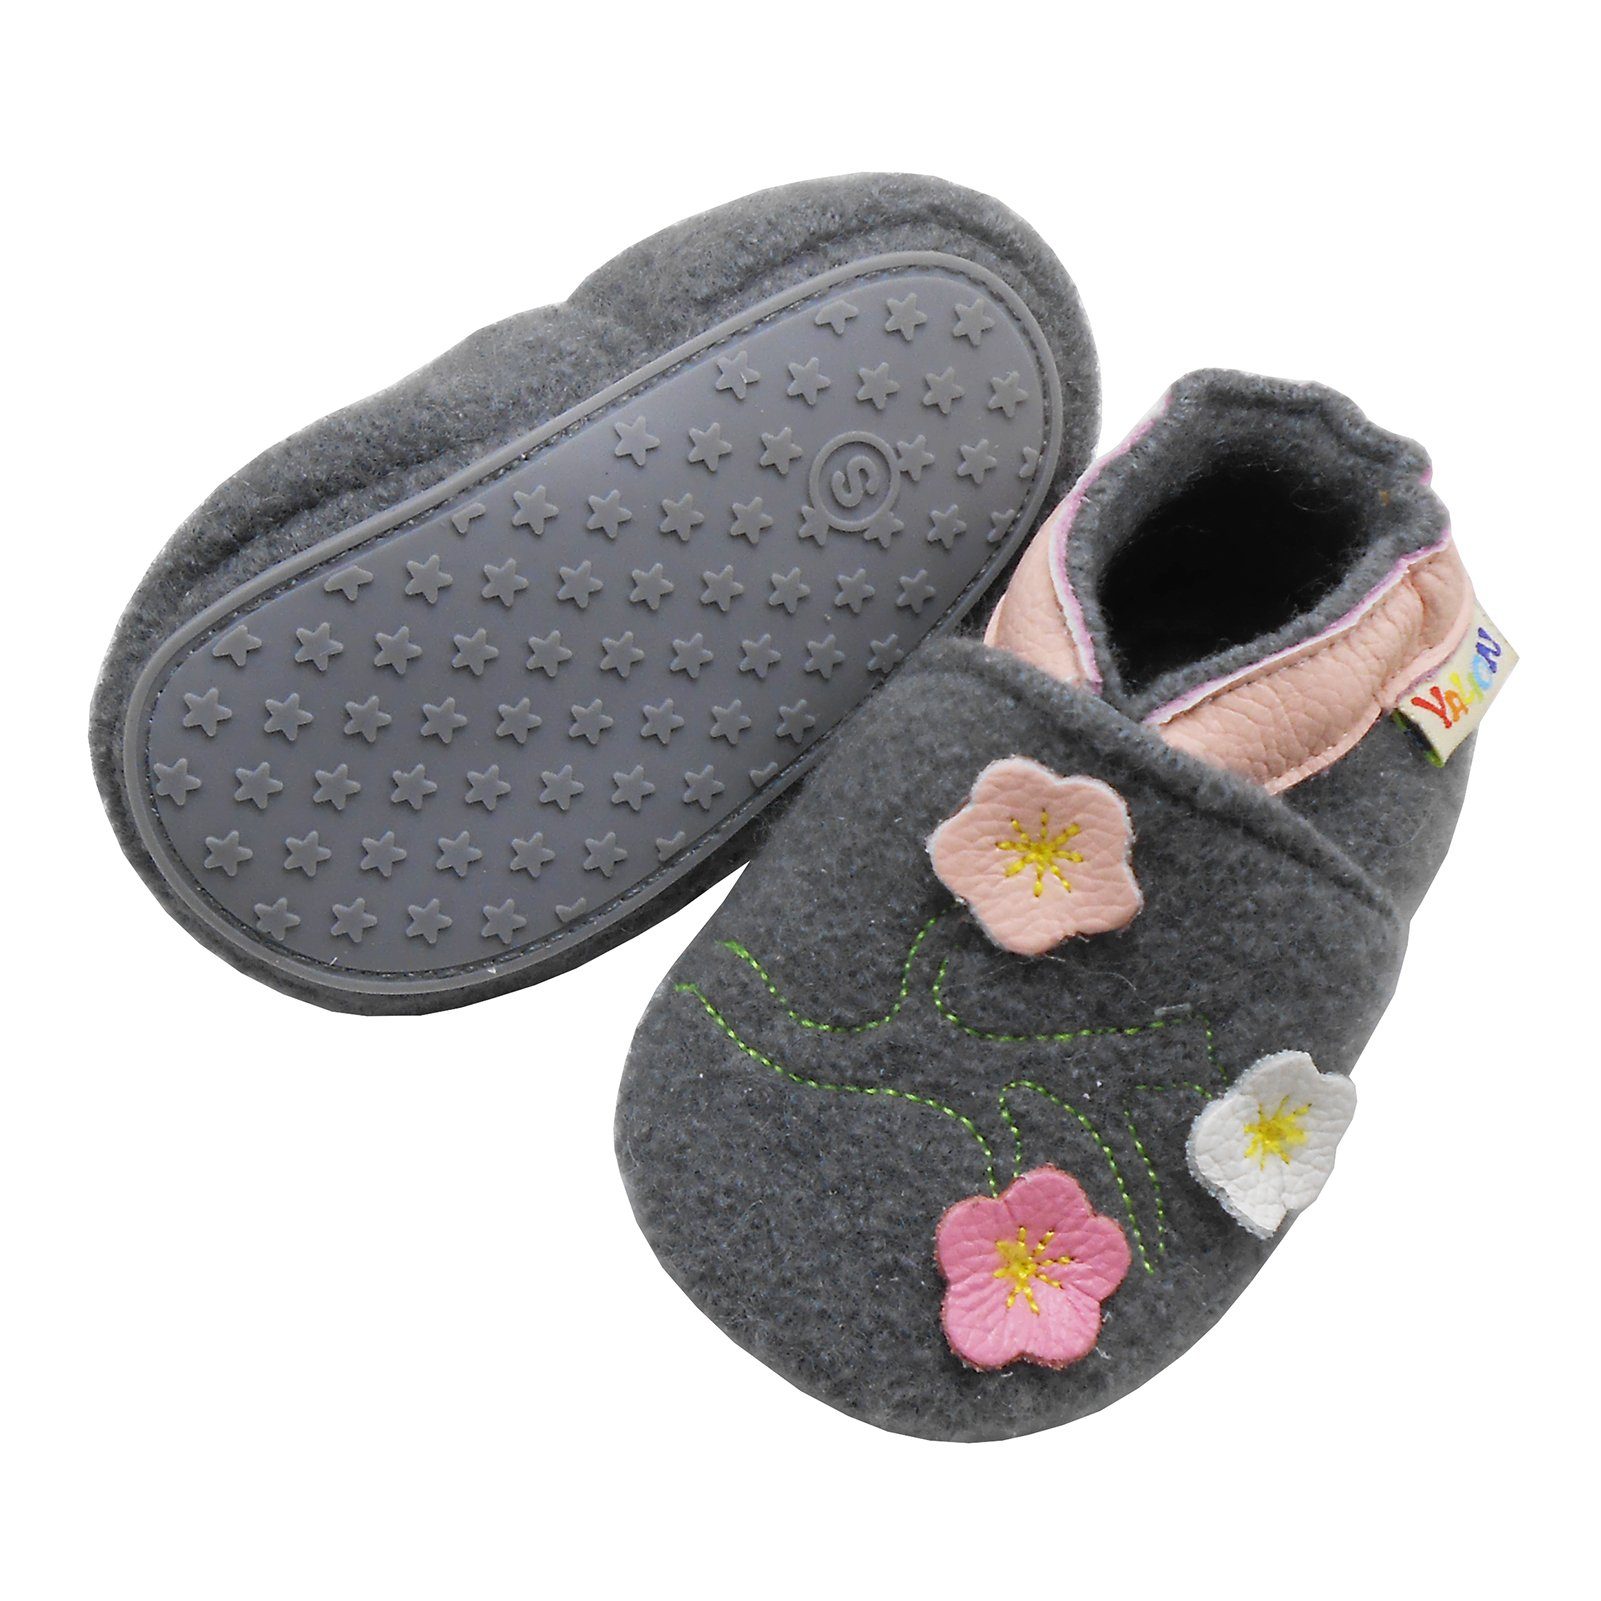 Schuhe Babyschuhe Mädchen Yalion Kinder Filz Hausschuhe aus Schafwolle und Leder Hausschuh